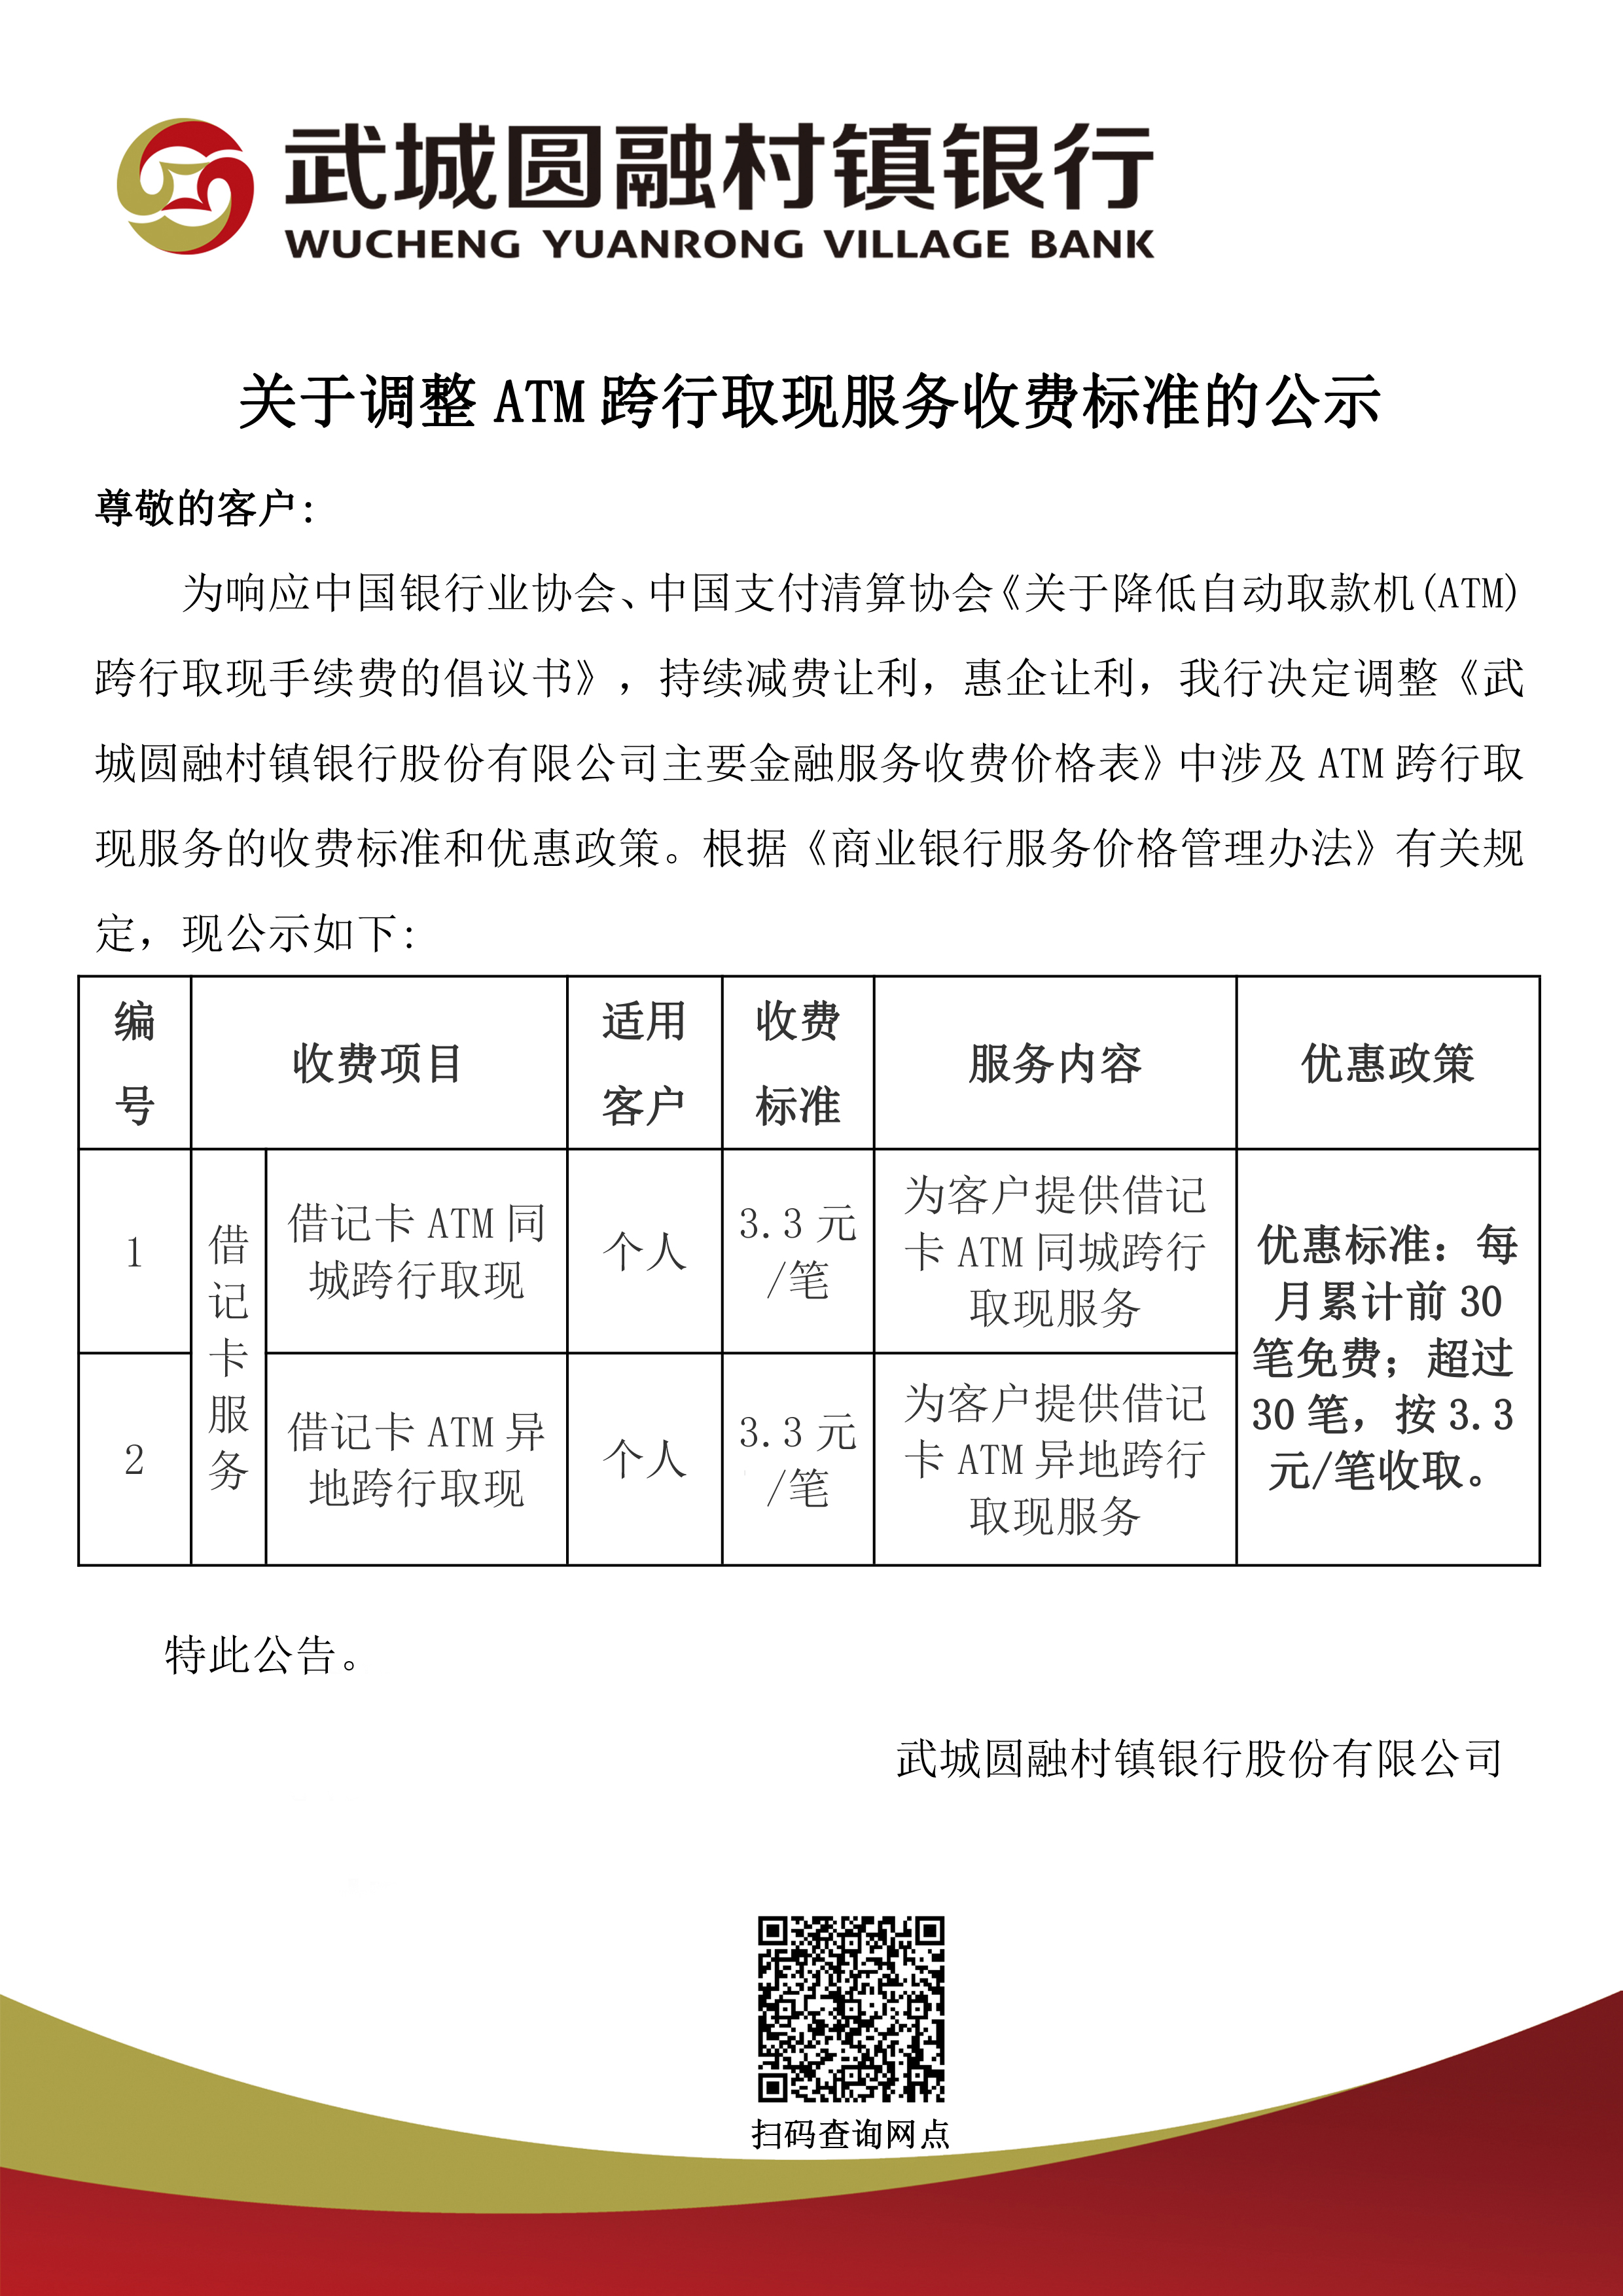 武城圆融村镇银行关于调整ATM跨行取现服务收费标准的公示